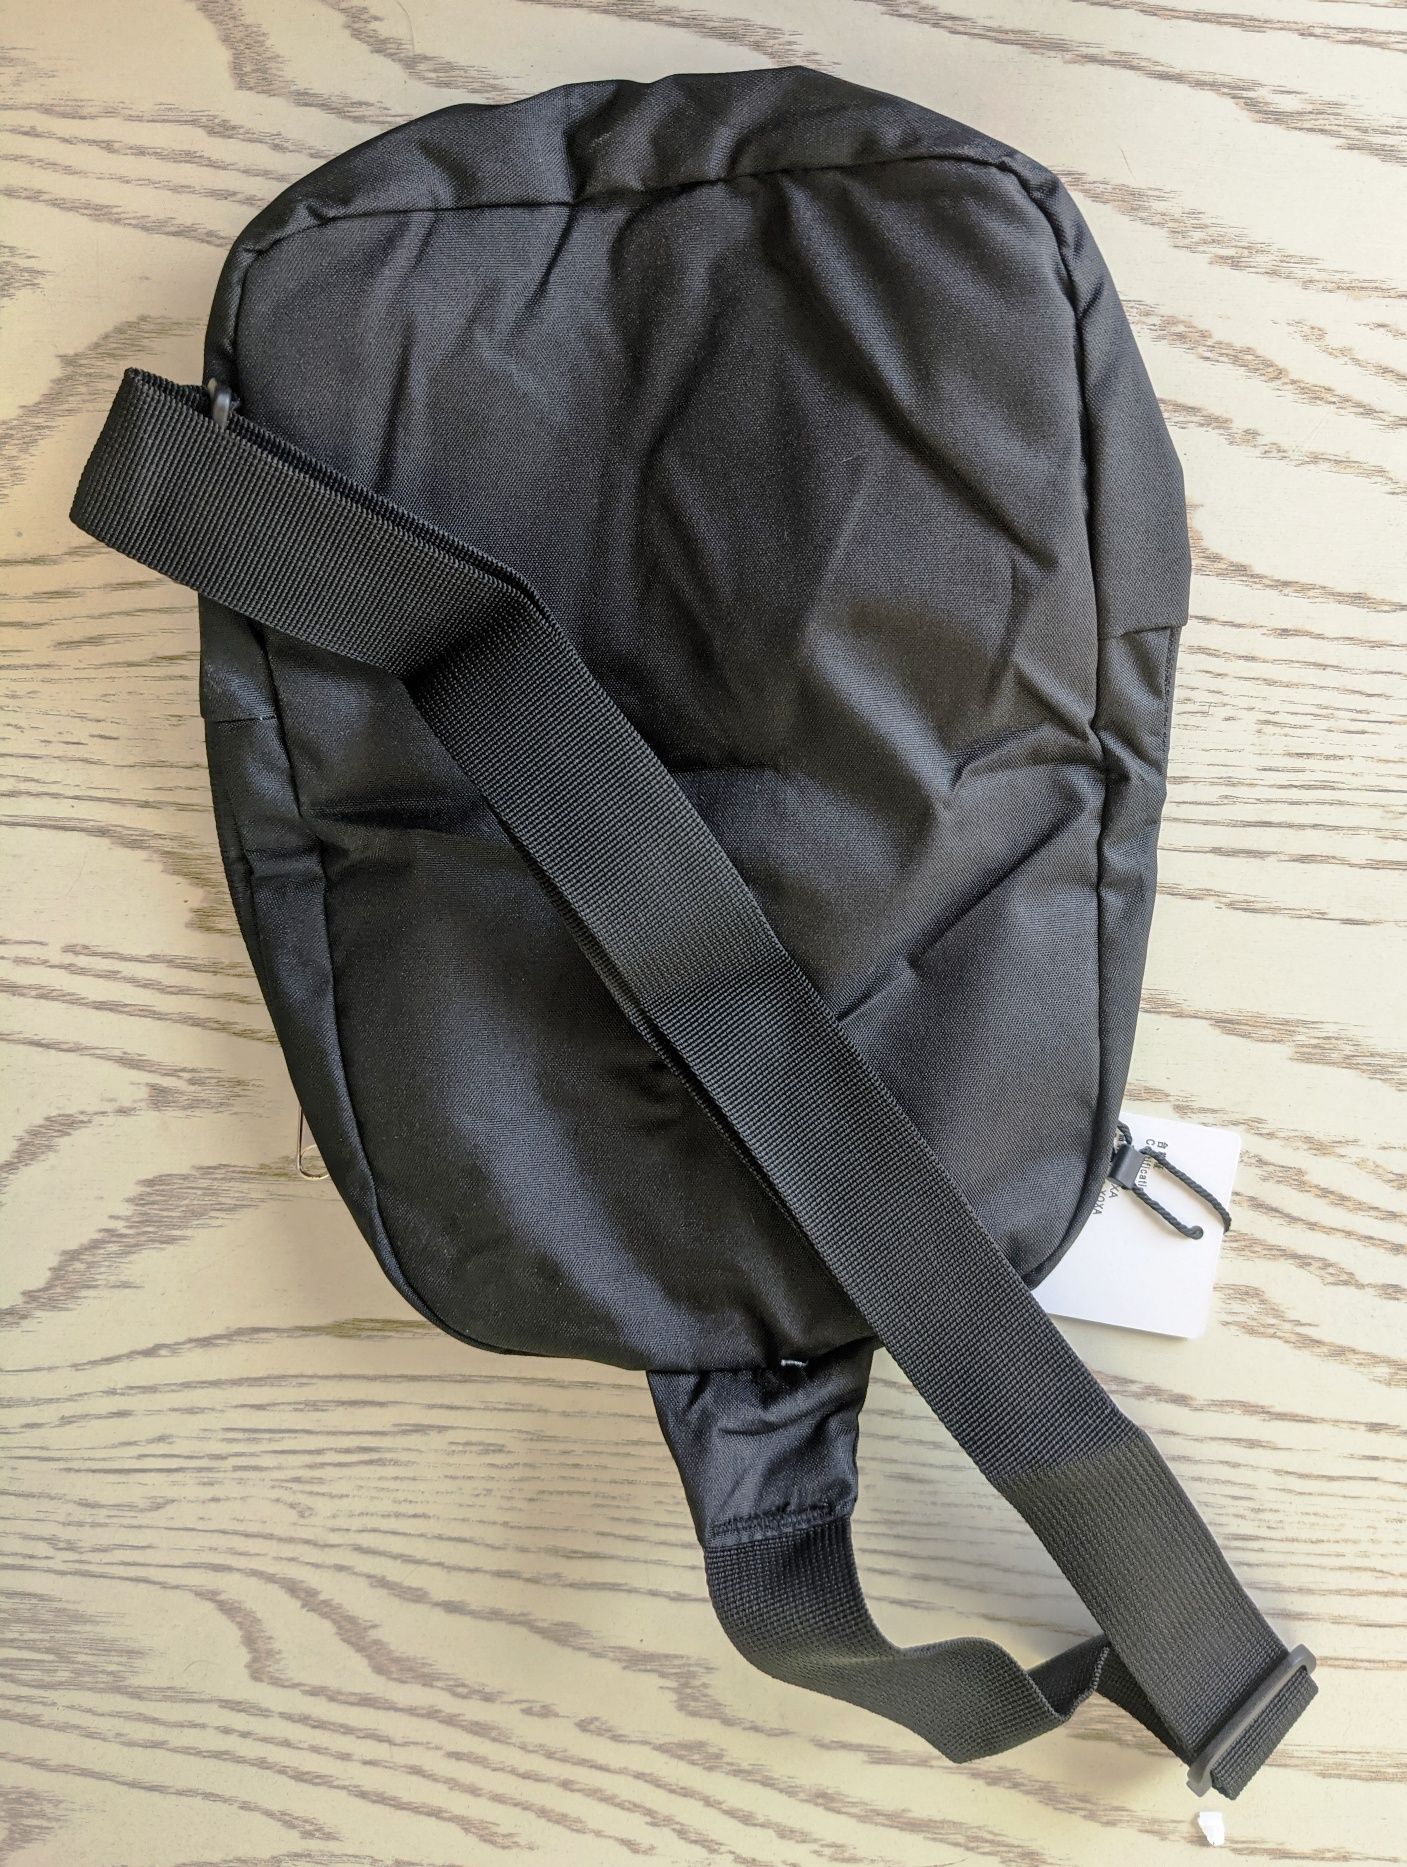 Сумка – мини-рюкзак с одной лямкой XQXA, можно использовать для спорта